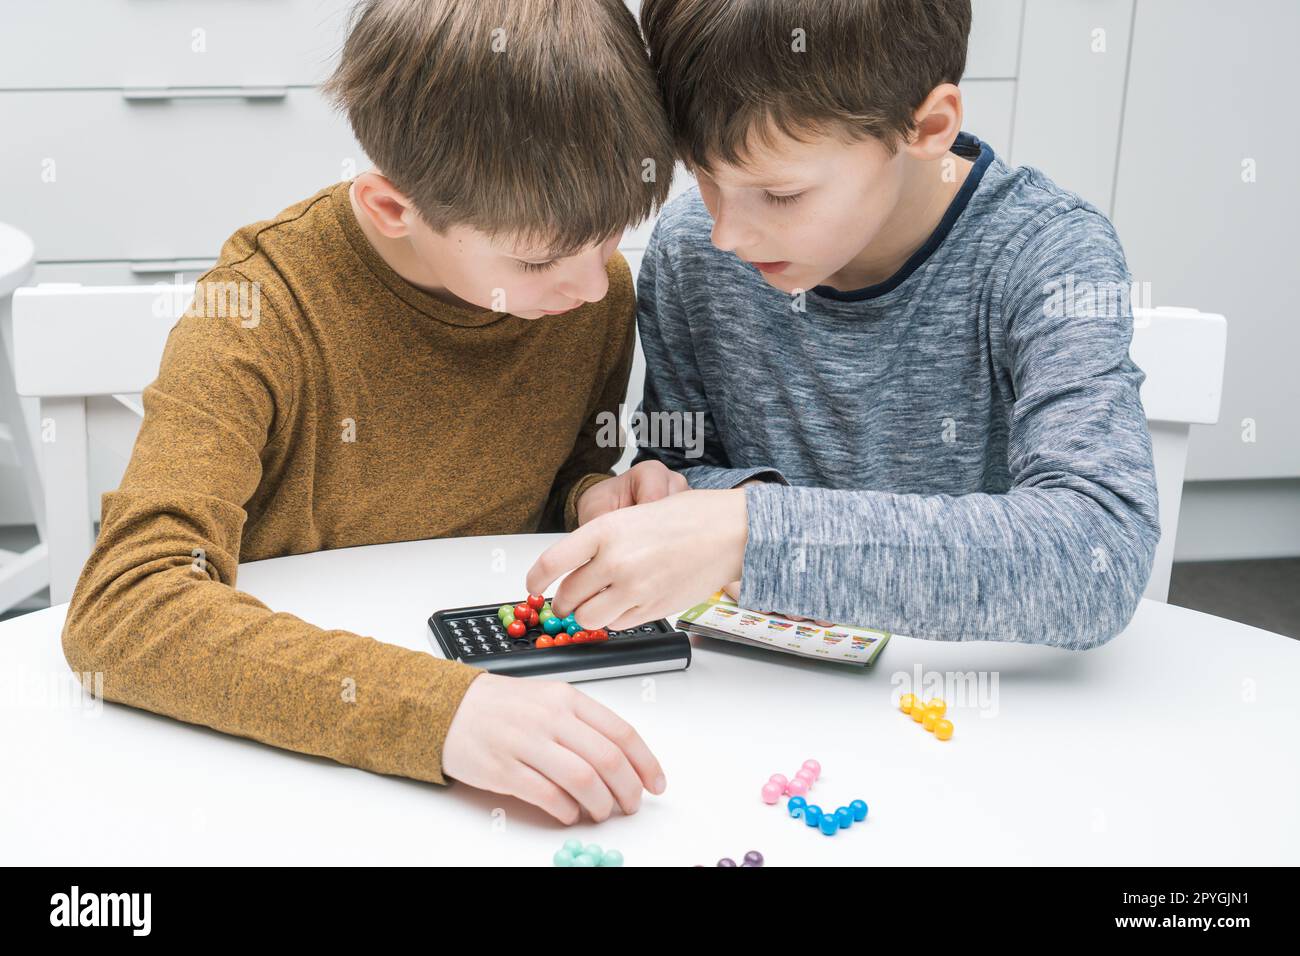 Zwei nachdenkliche und begeisterte Jungen spielen pädagogisches Strategiespiel mit Schwarzfeld und bunten Bällen auf dem Tisch Stockfoto